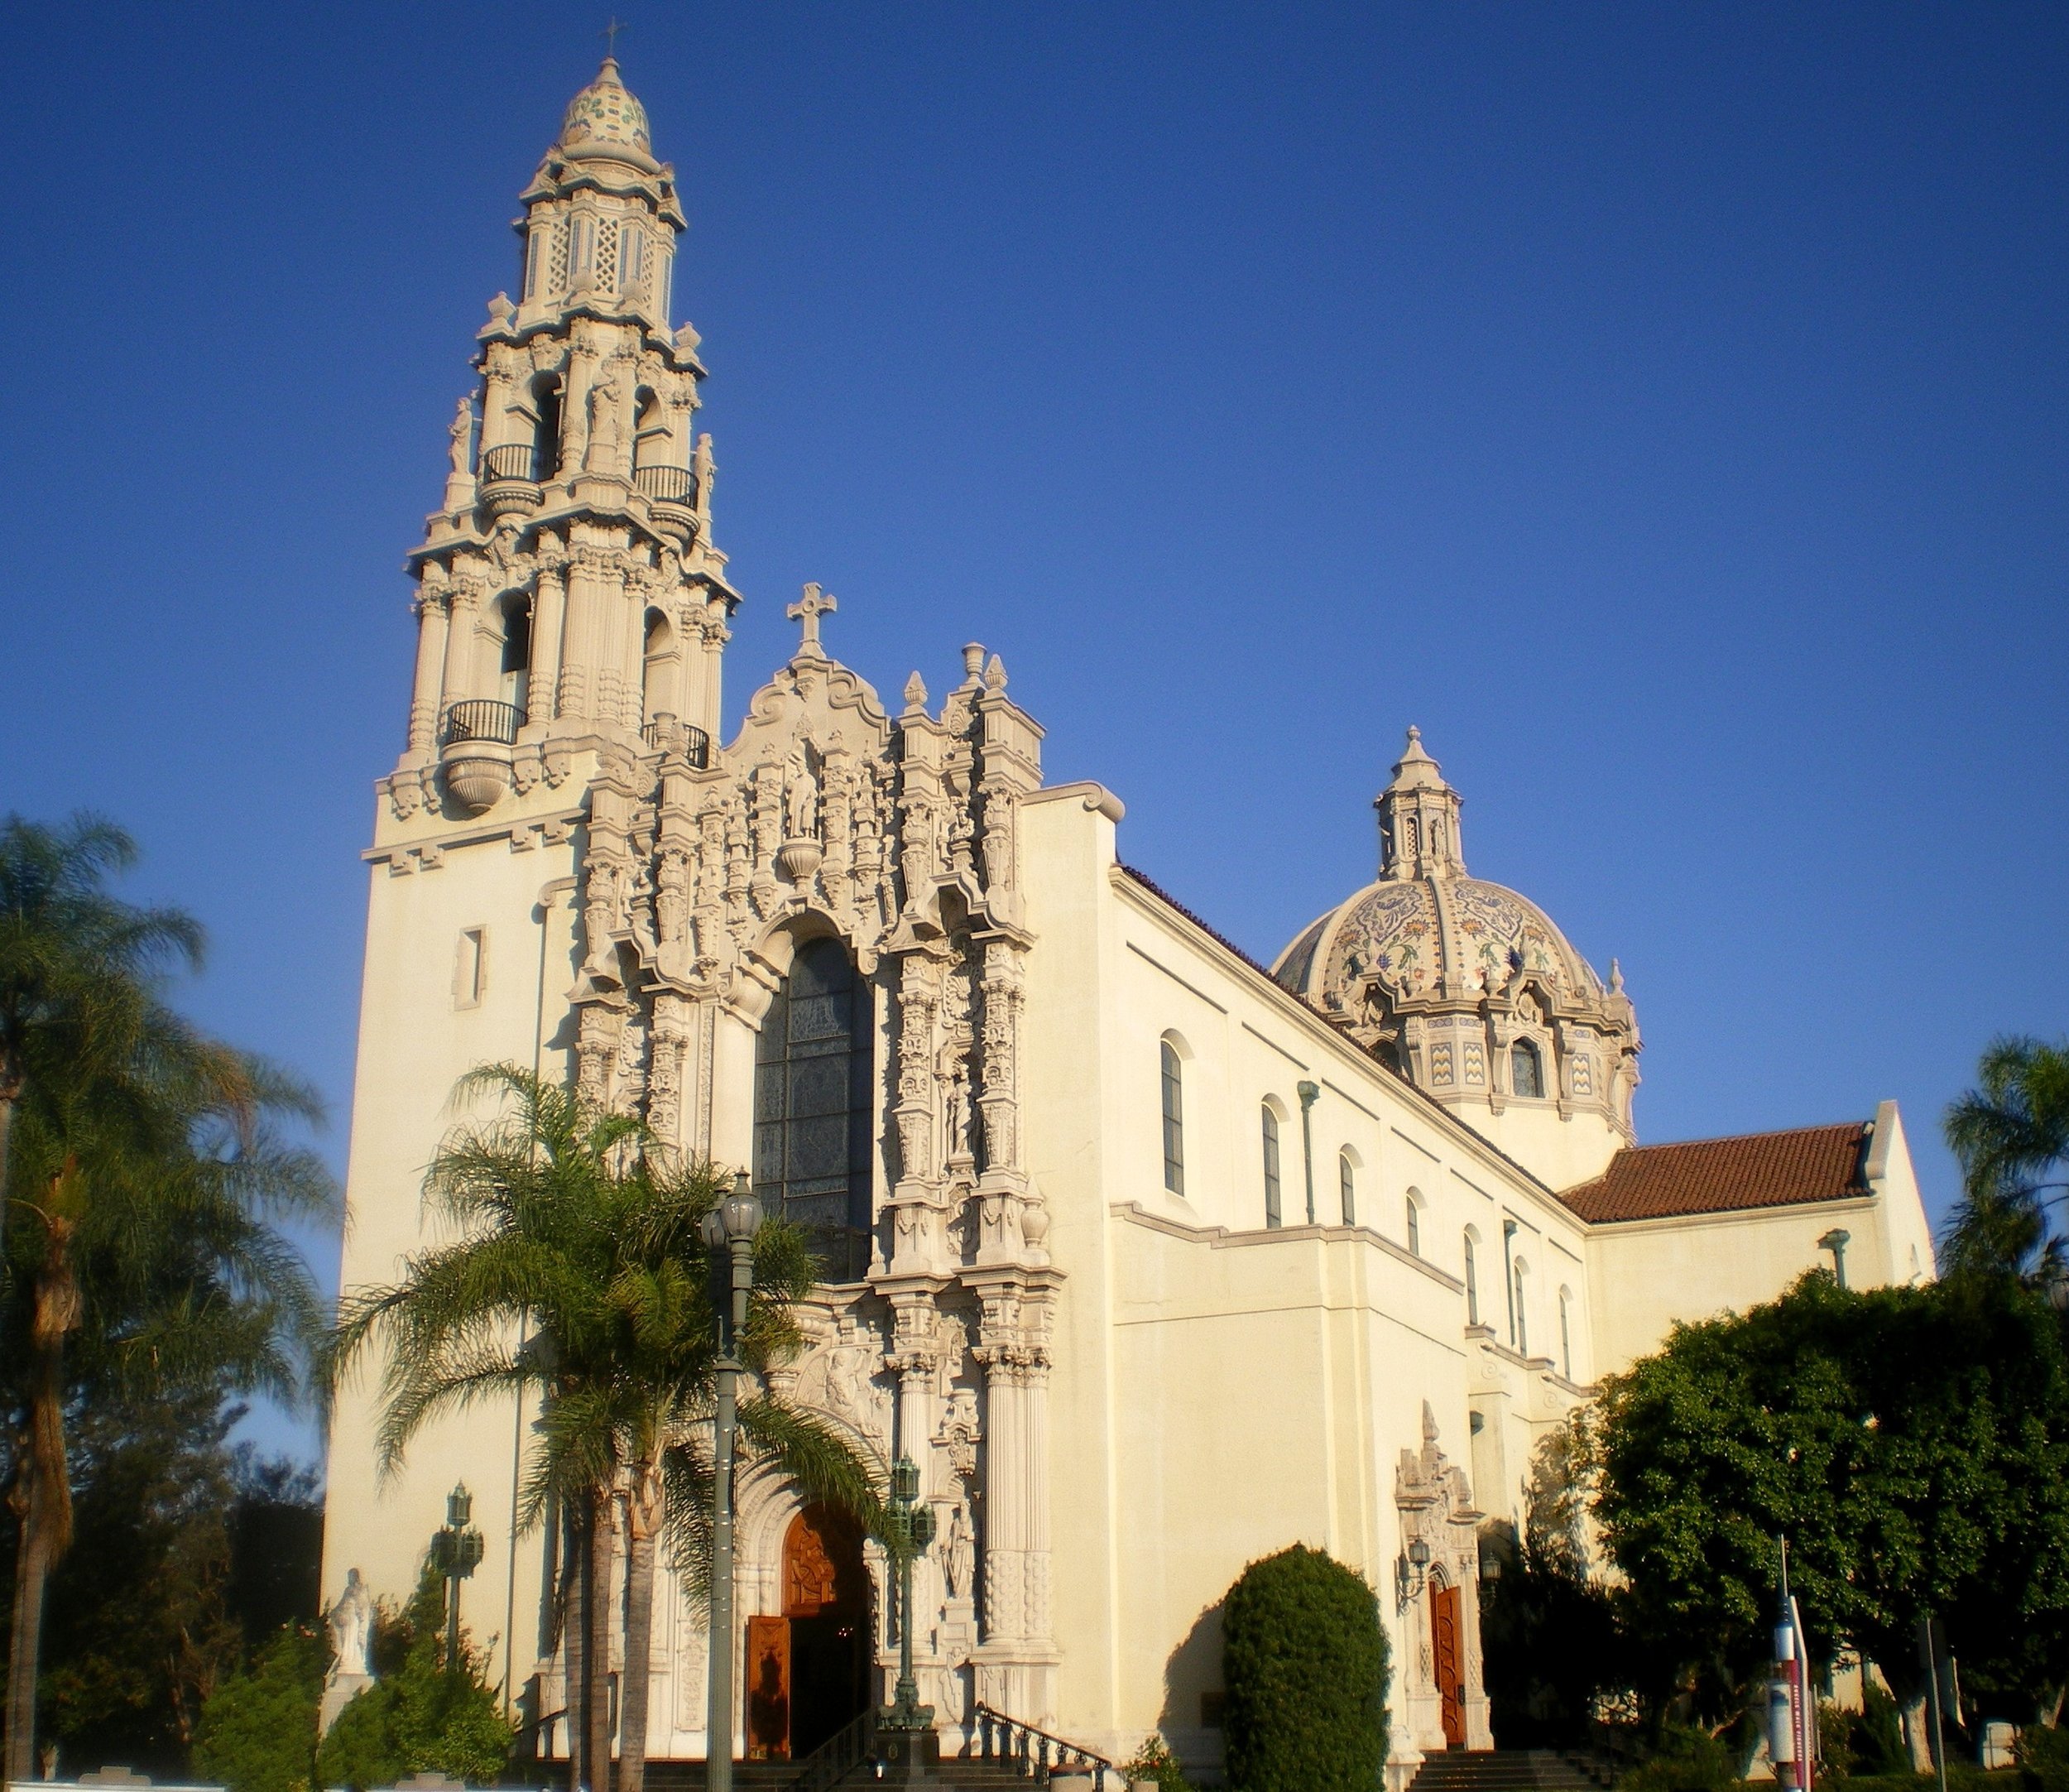 1. The Figueroa Corridor: St. Vincent de Paul Catholic Church